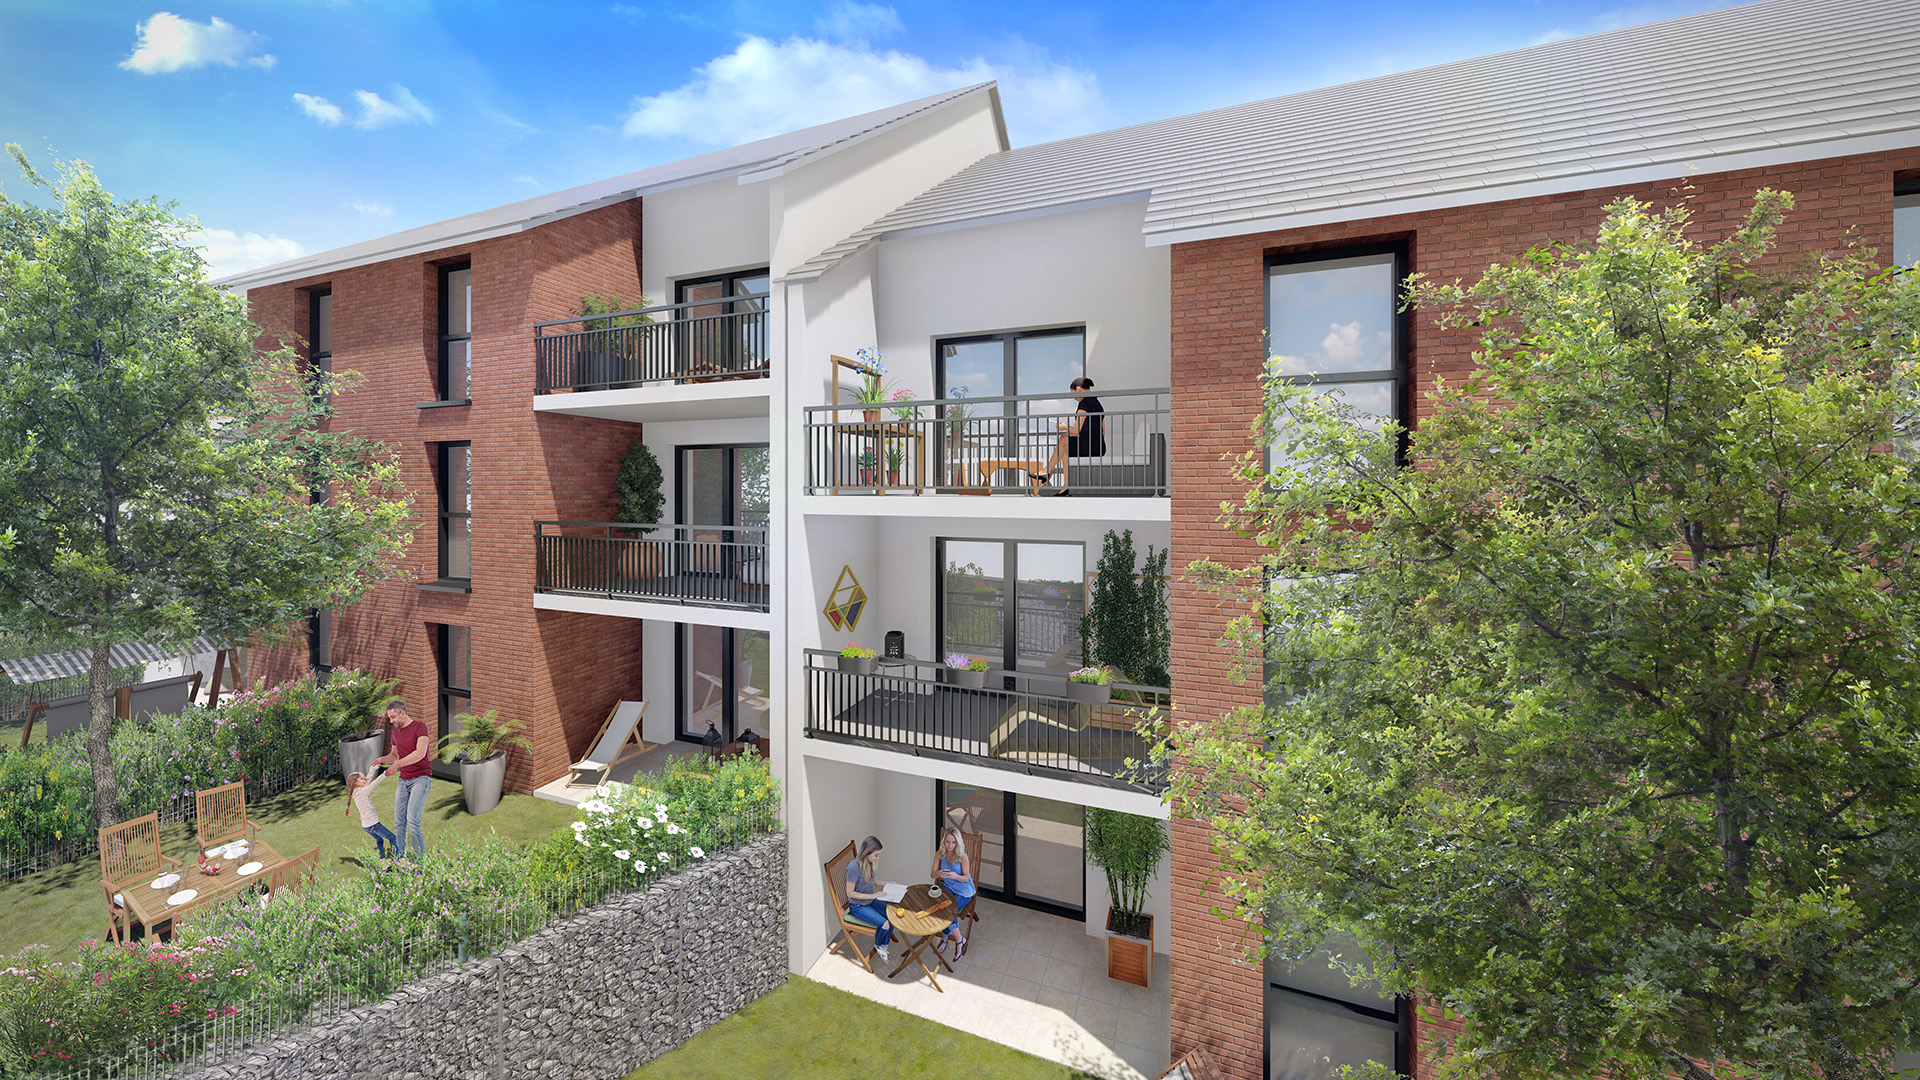 perspective couleur en journee residence les toits argente a grand-couronne proche rouen - appartement neuf avec balcon ou jardin 